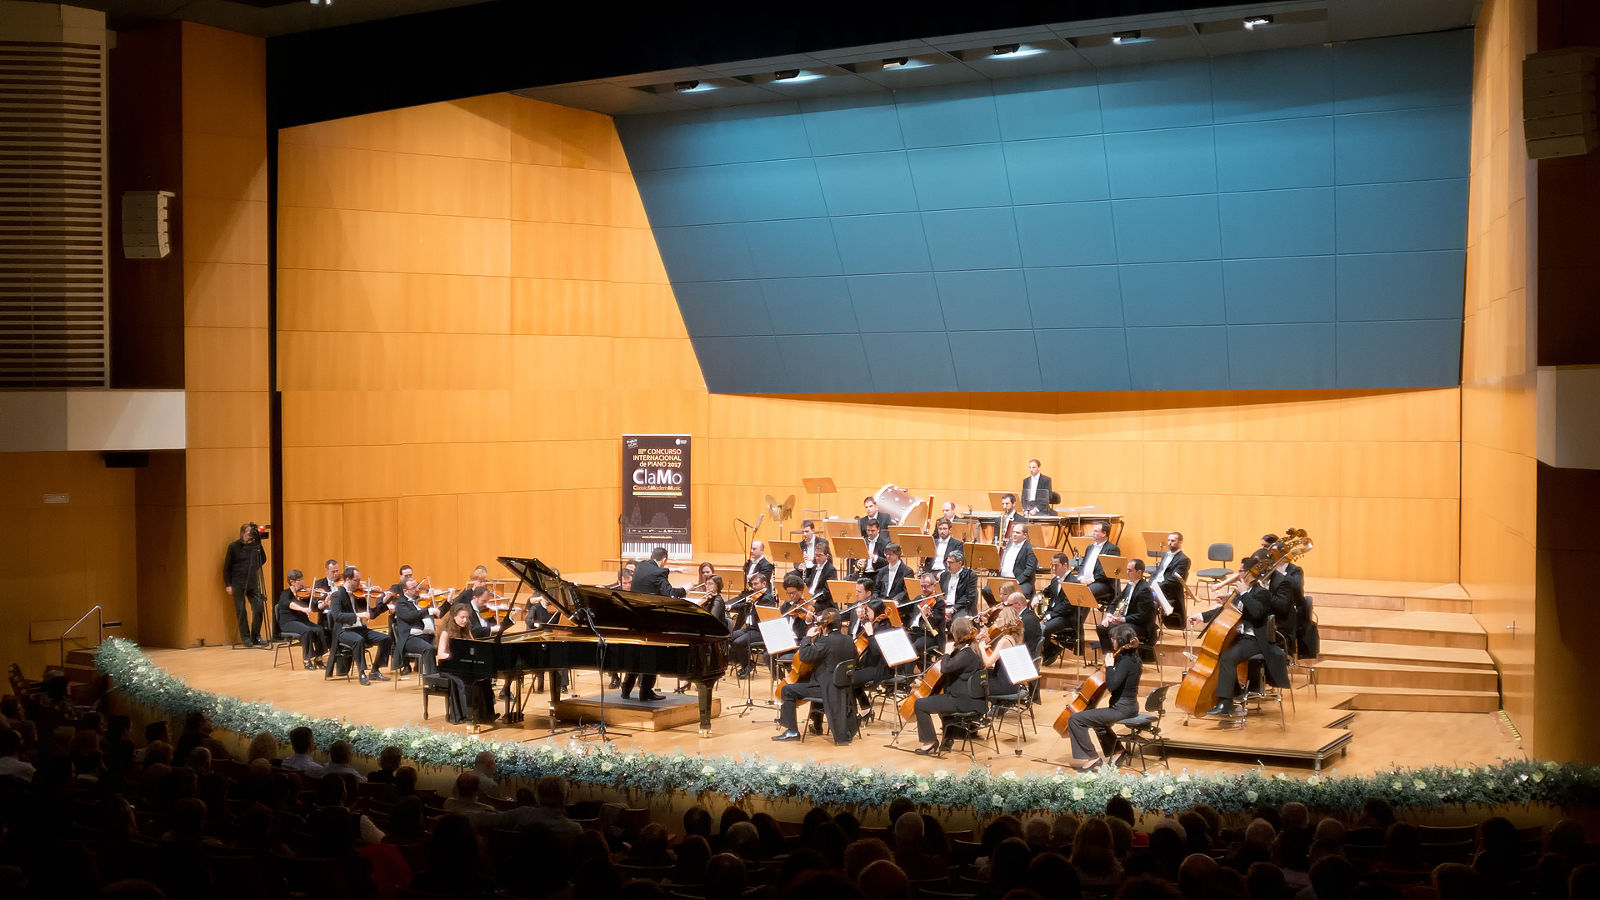 Orquesta sinfónica Región de Murcia + Clamo Music en el Auditorio Víctor Villegas